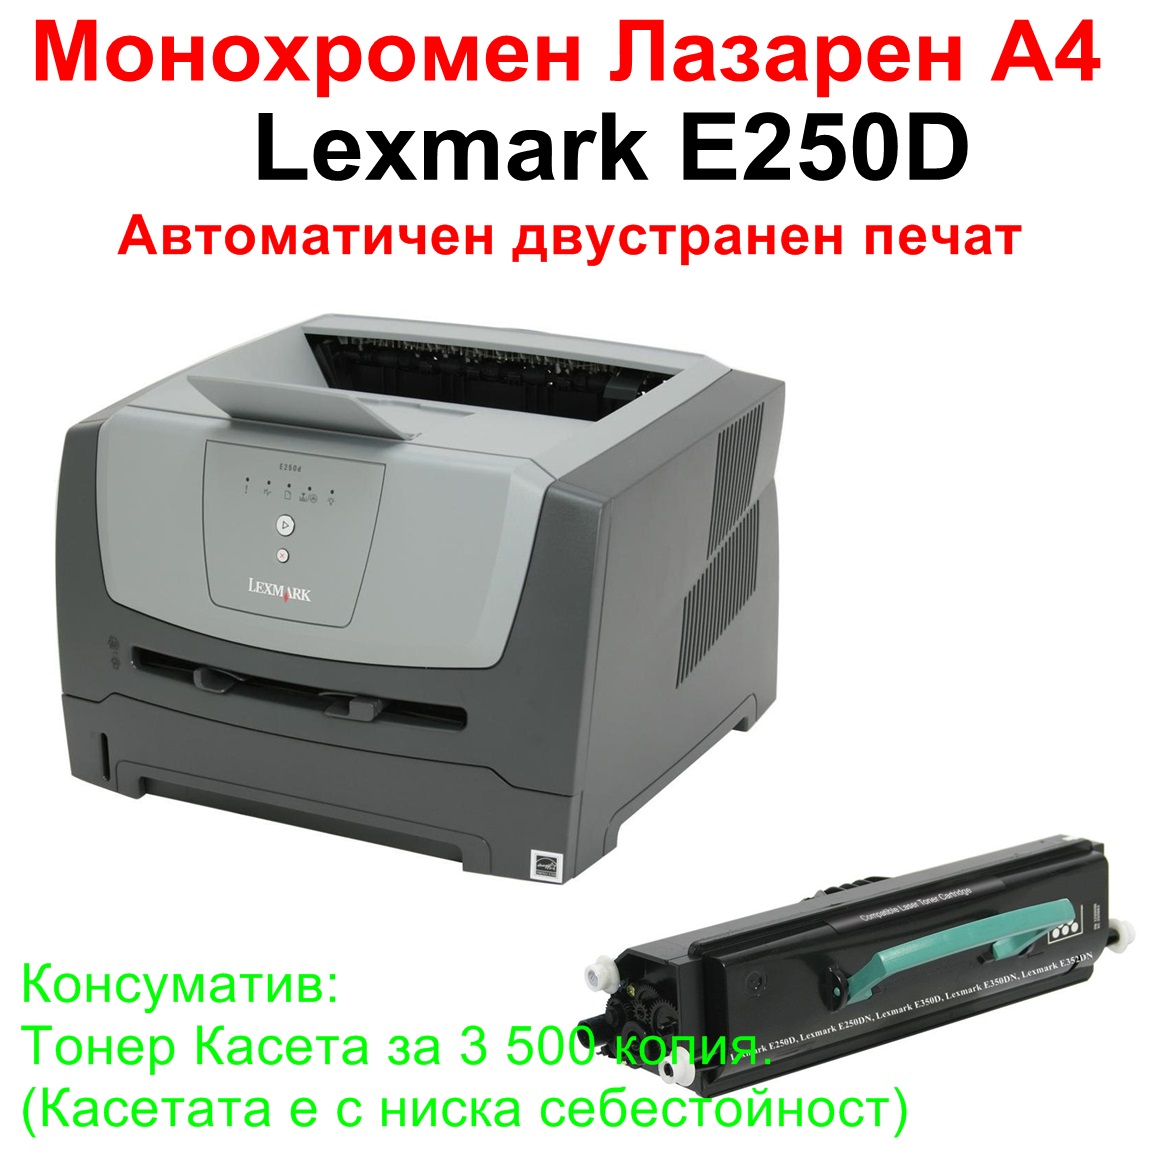 Лазерен принтер Lexmark E250D